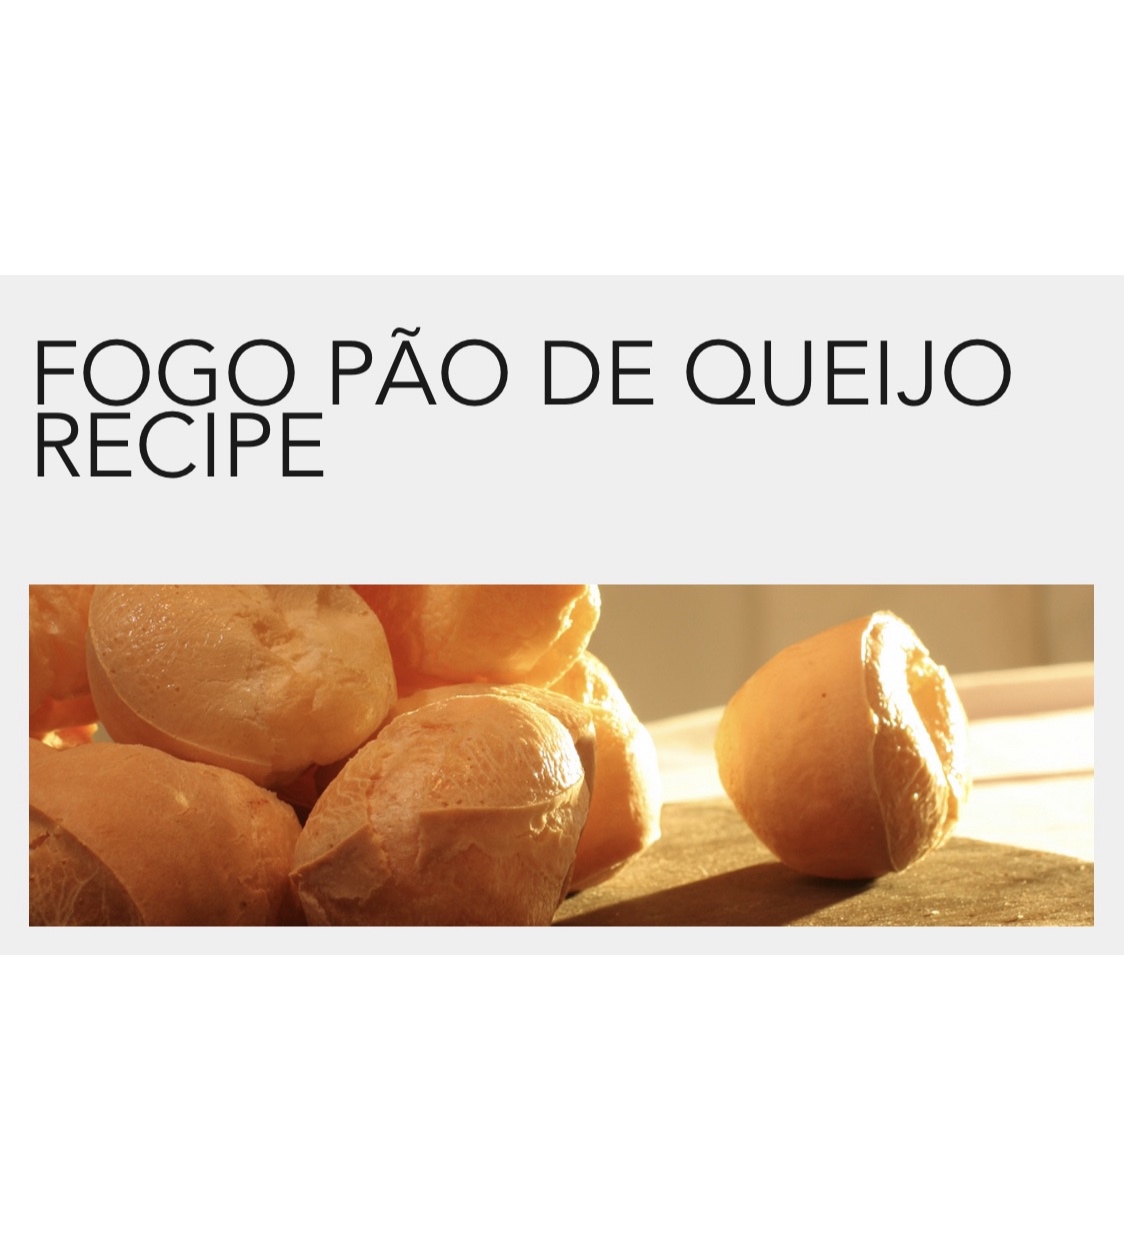 著名巴西餐馆Fogo De Chao 的芝士球PÃO DE QUEIJO